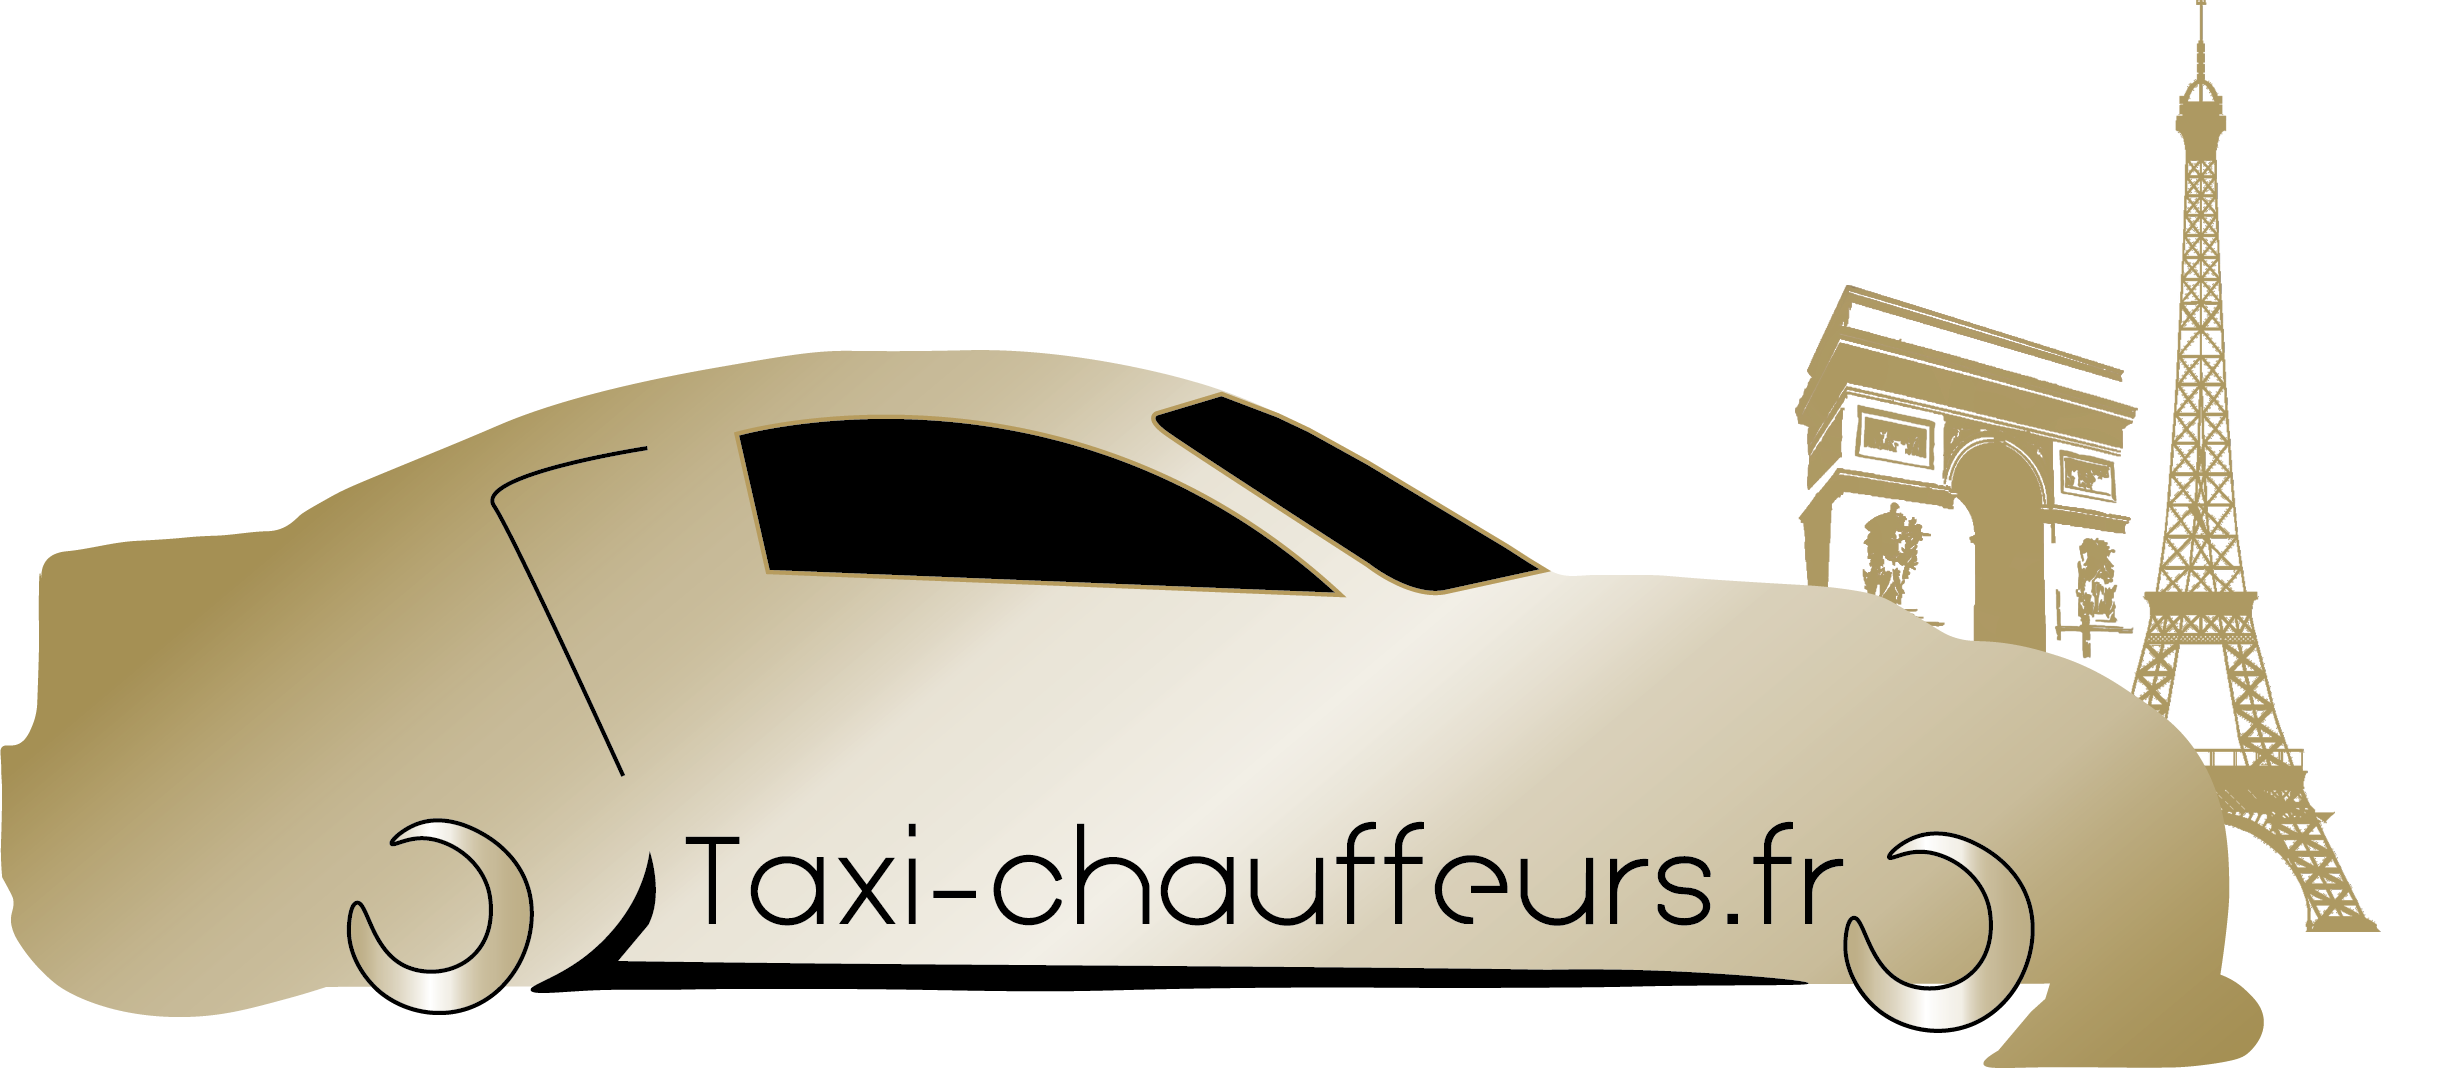 logo Taxi-chauffeurs vtc Paris